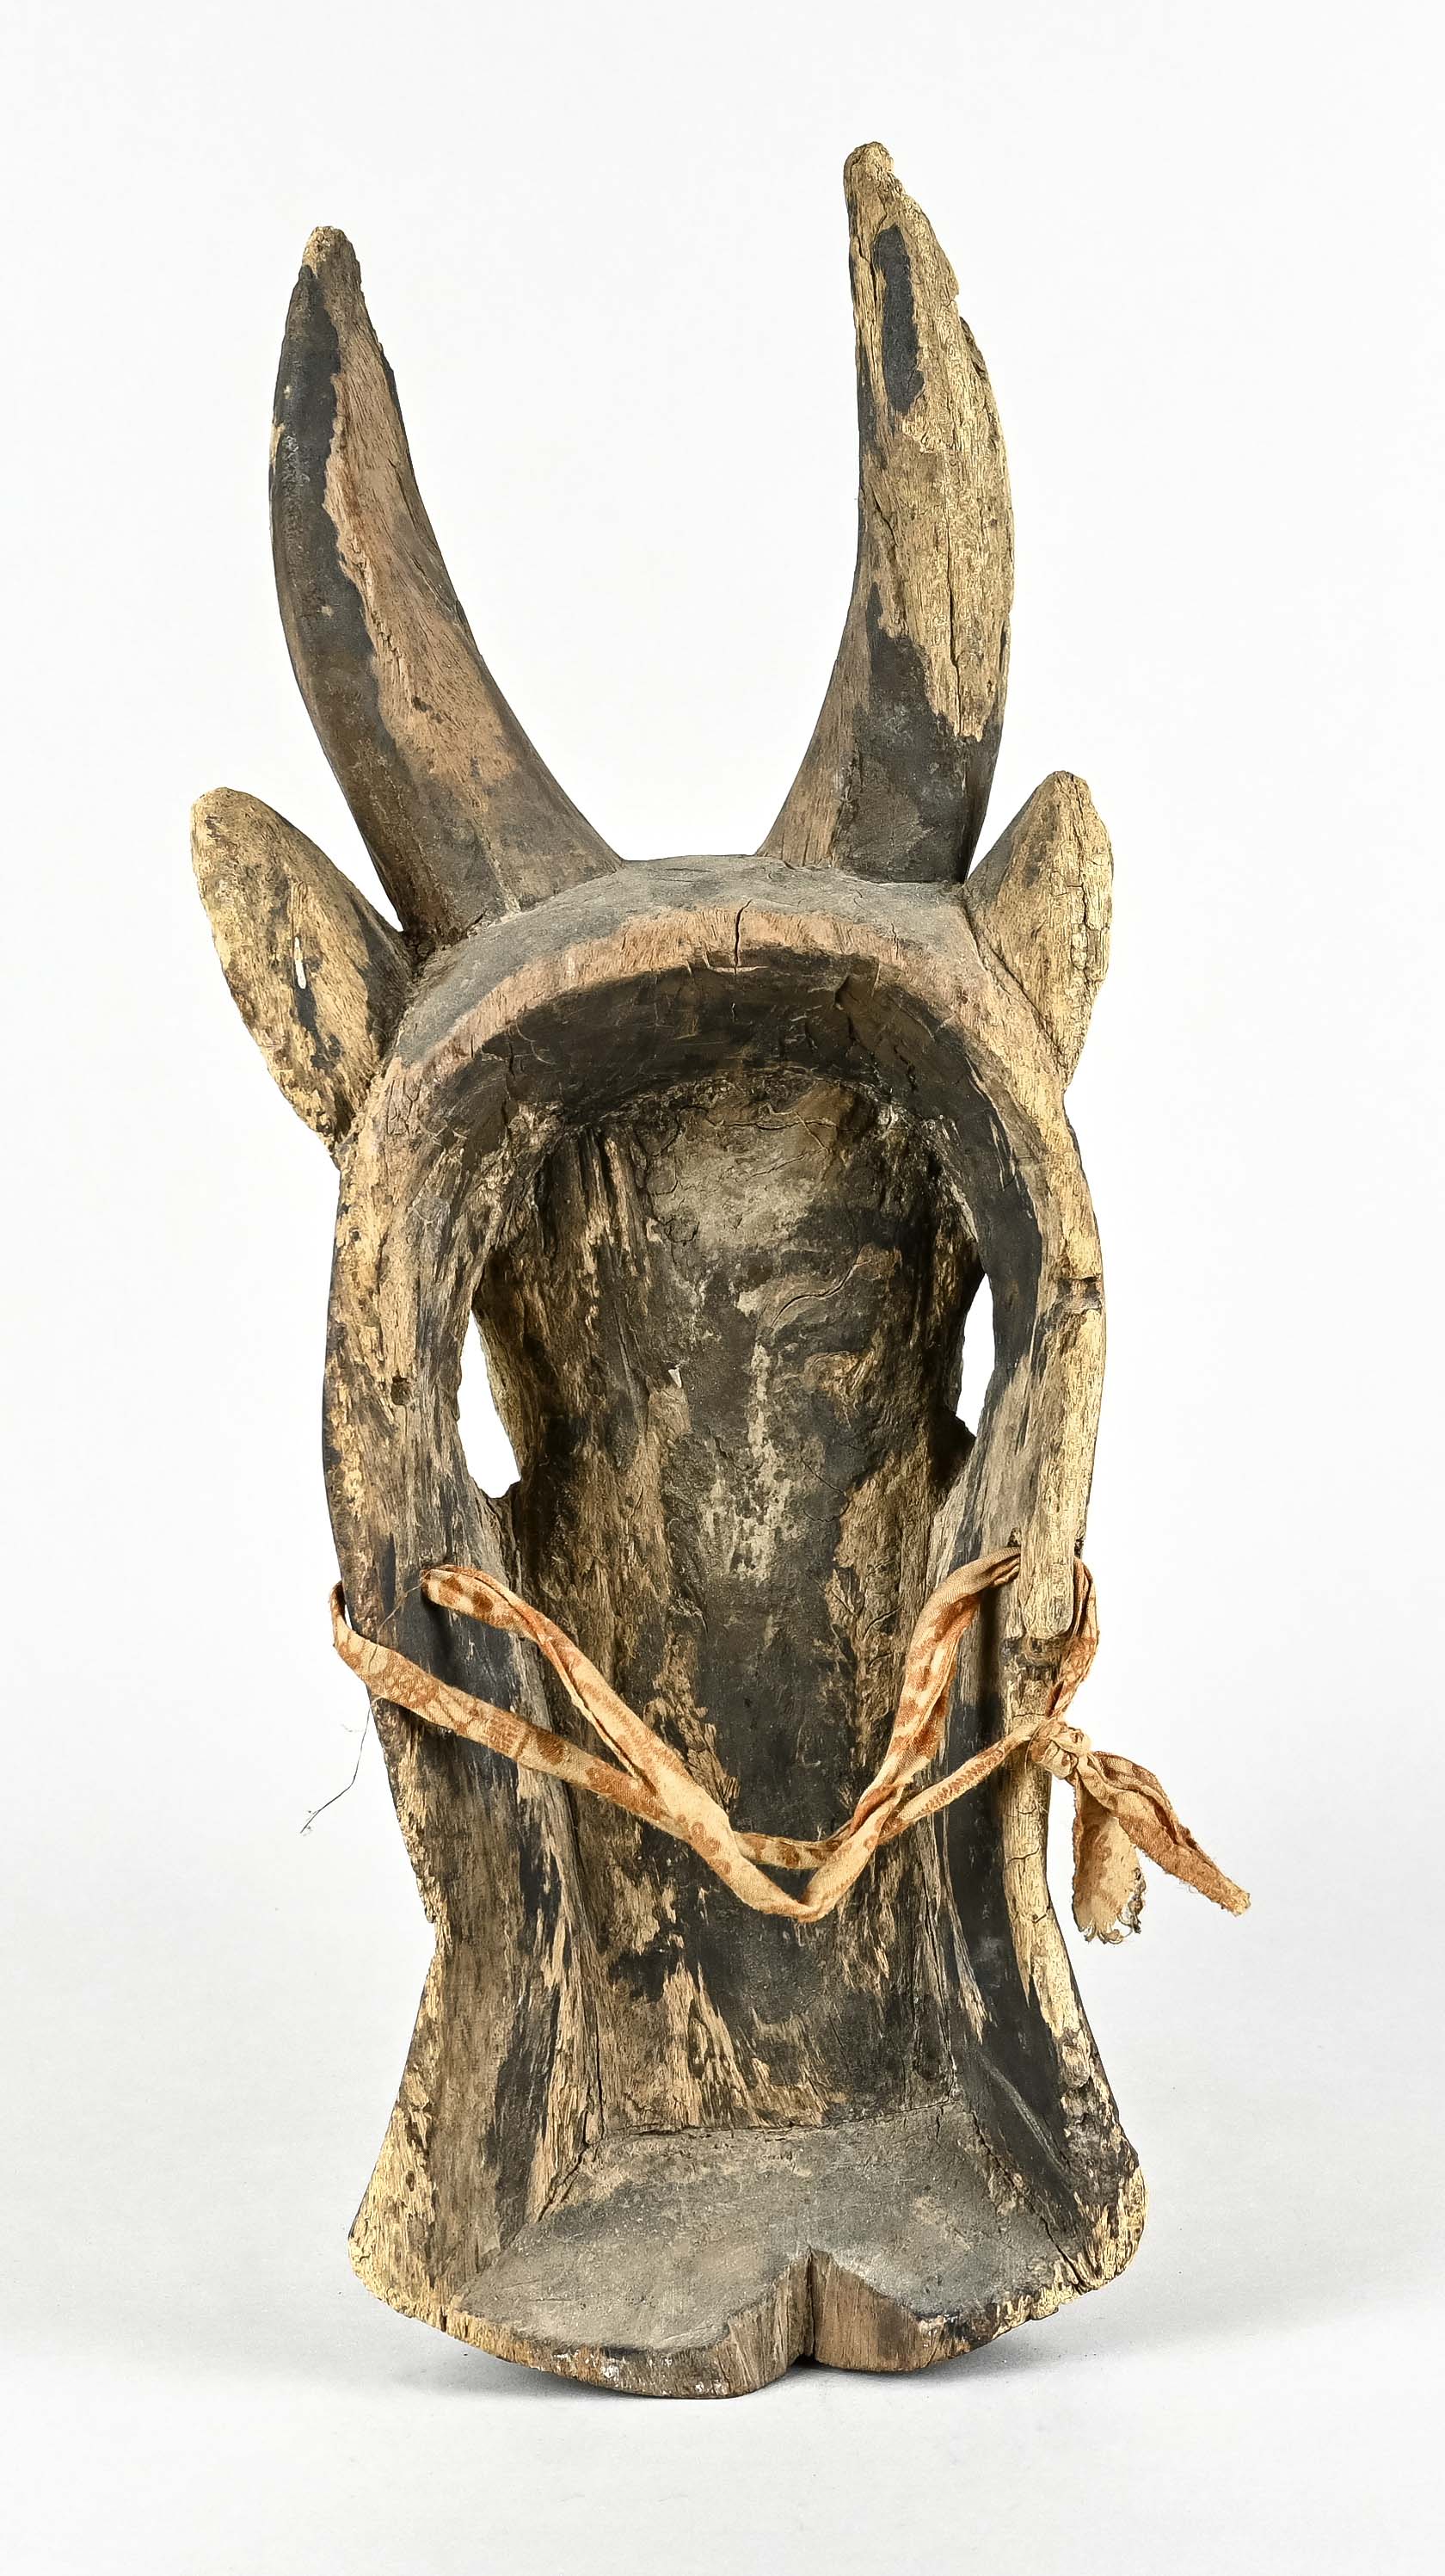 Gehörnte Tiermaske mit seitlichen Augen, Afrika, Höhe ca. 47 cm, starke Altersspuren. - Bild 3 aus 3